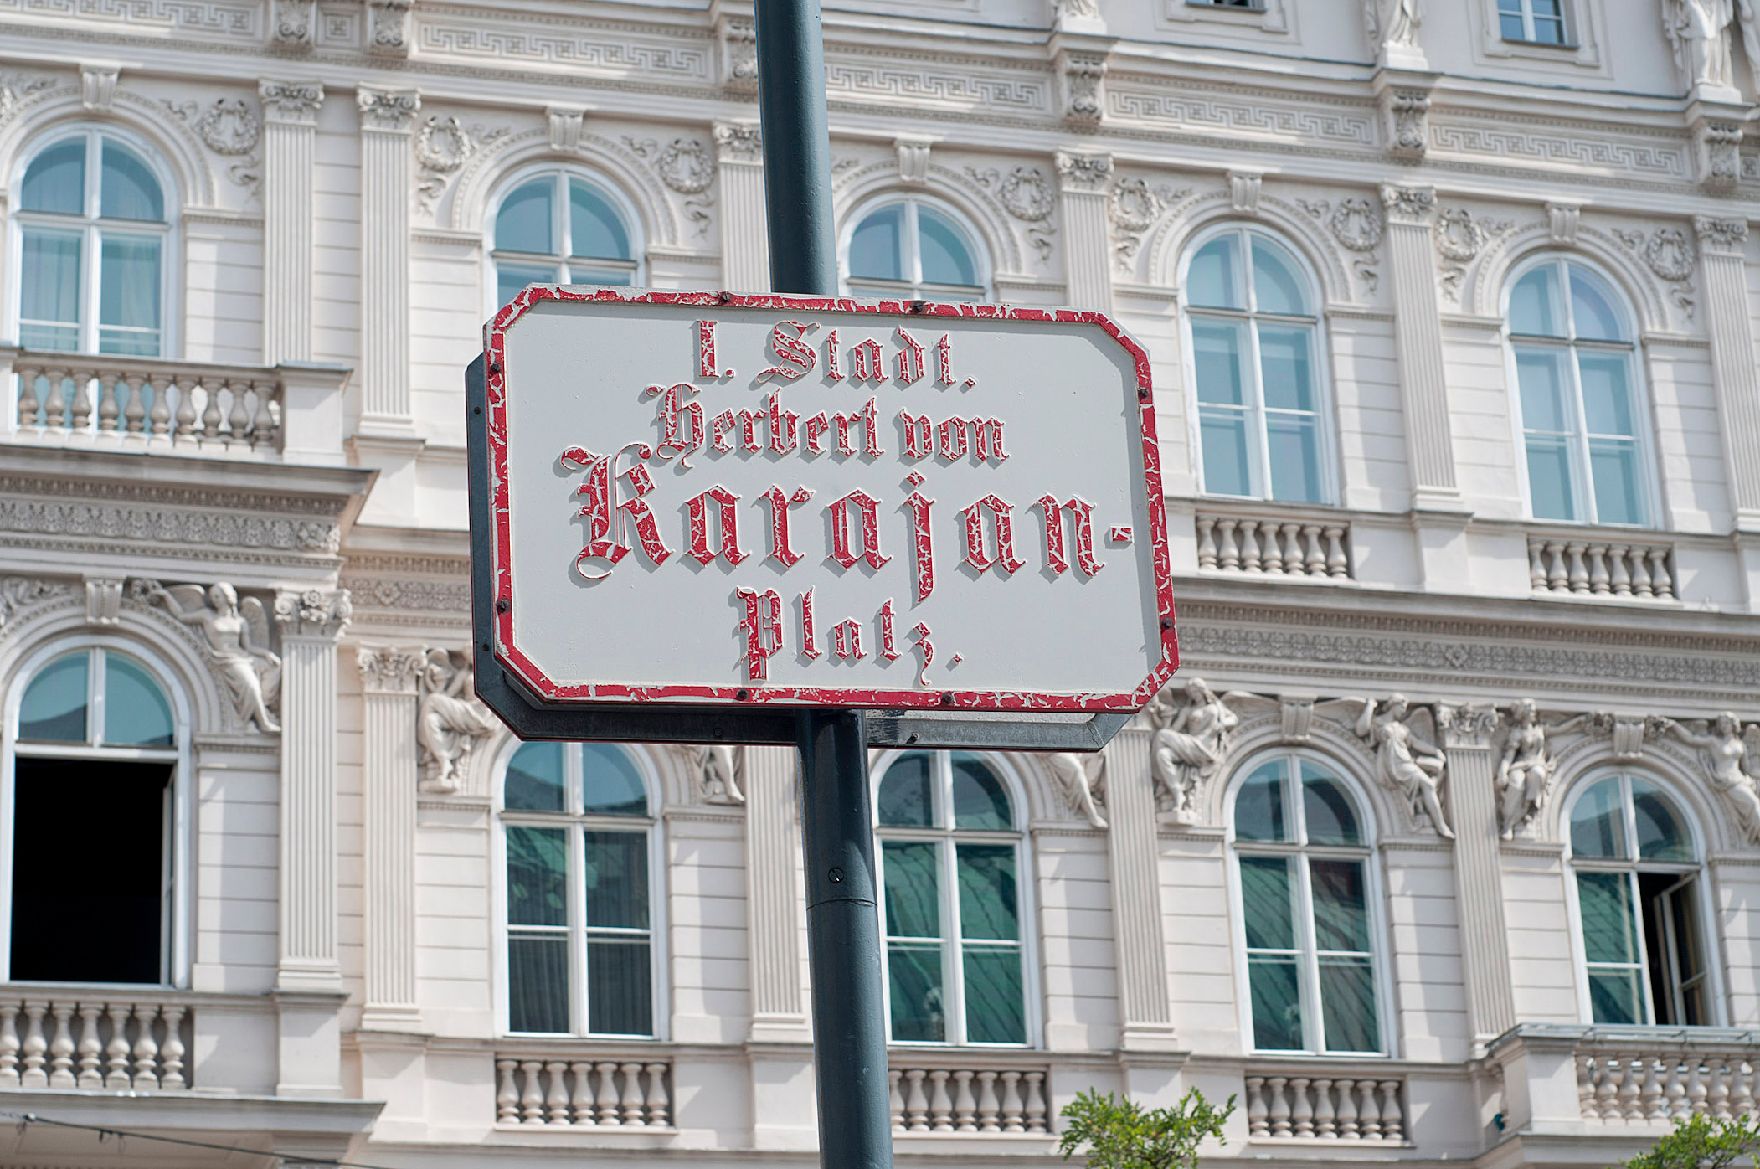 Straßenschild "I. Stadt Herbert von Karajan-Platz" vor der Wiener Staatsoper. Schlagworte: Beschriftung, Straßenschild, Verkehr